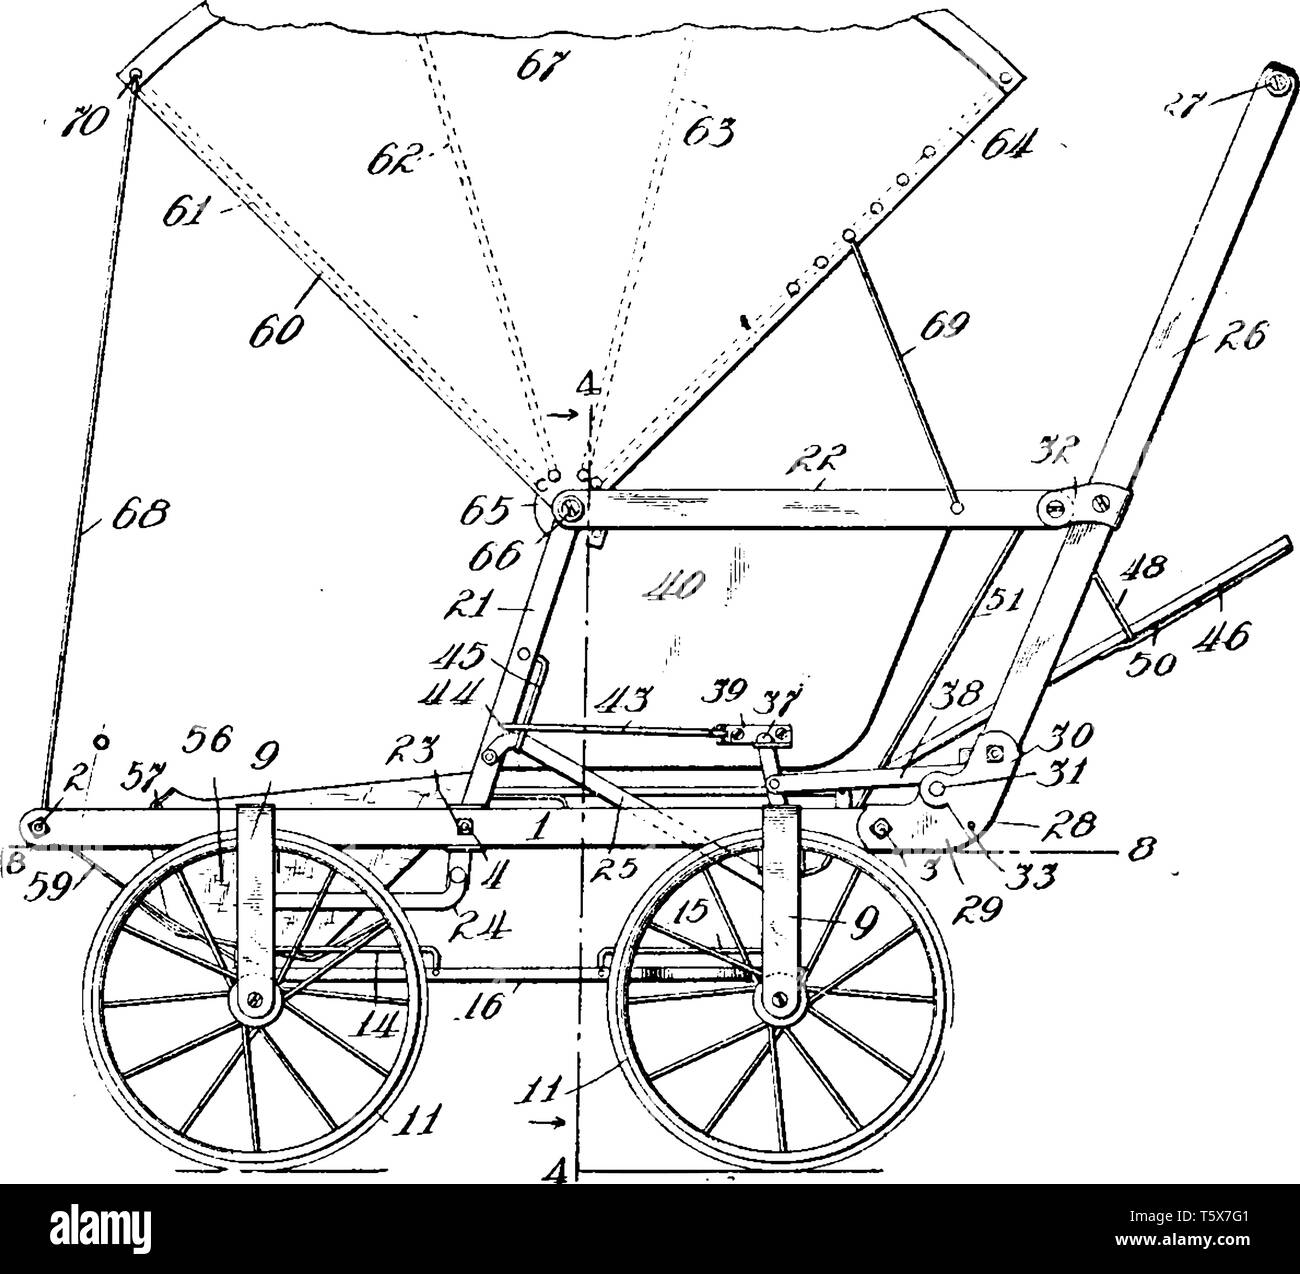 Panier chariot à quatre roues en particulier une voiture de chevaux souvent d'un design élégant, vintage dessin ou gravure illustration. Illustration de Vecteur